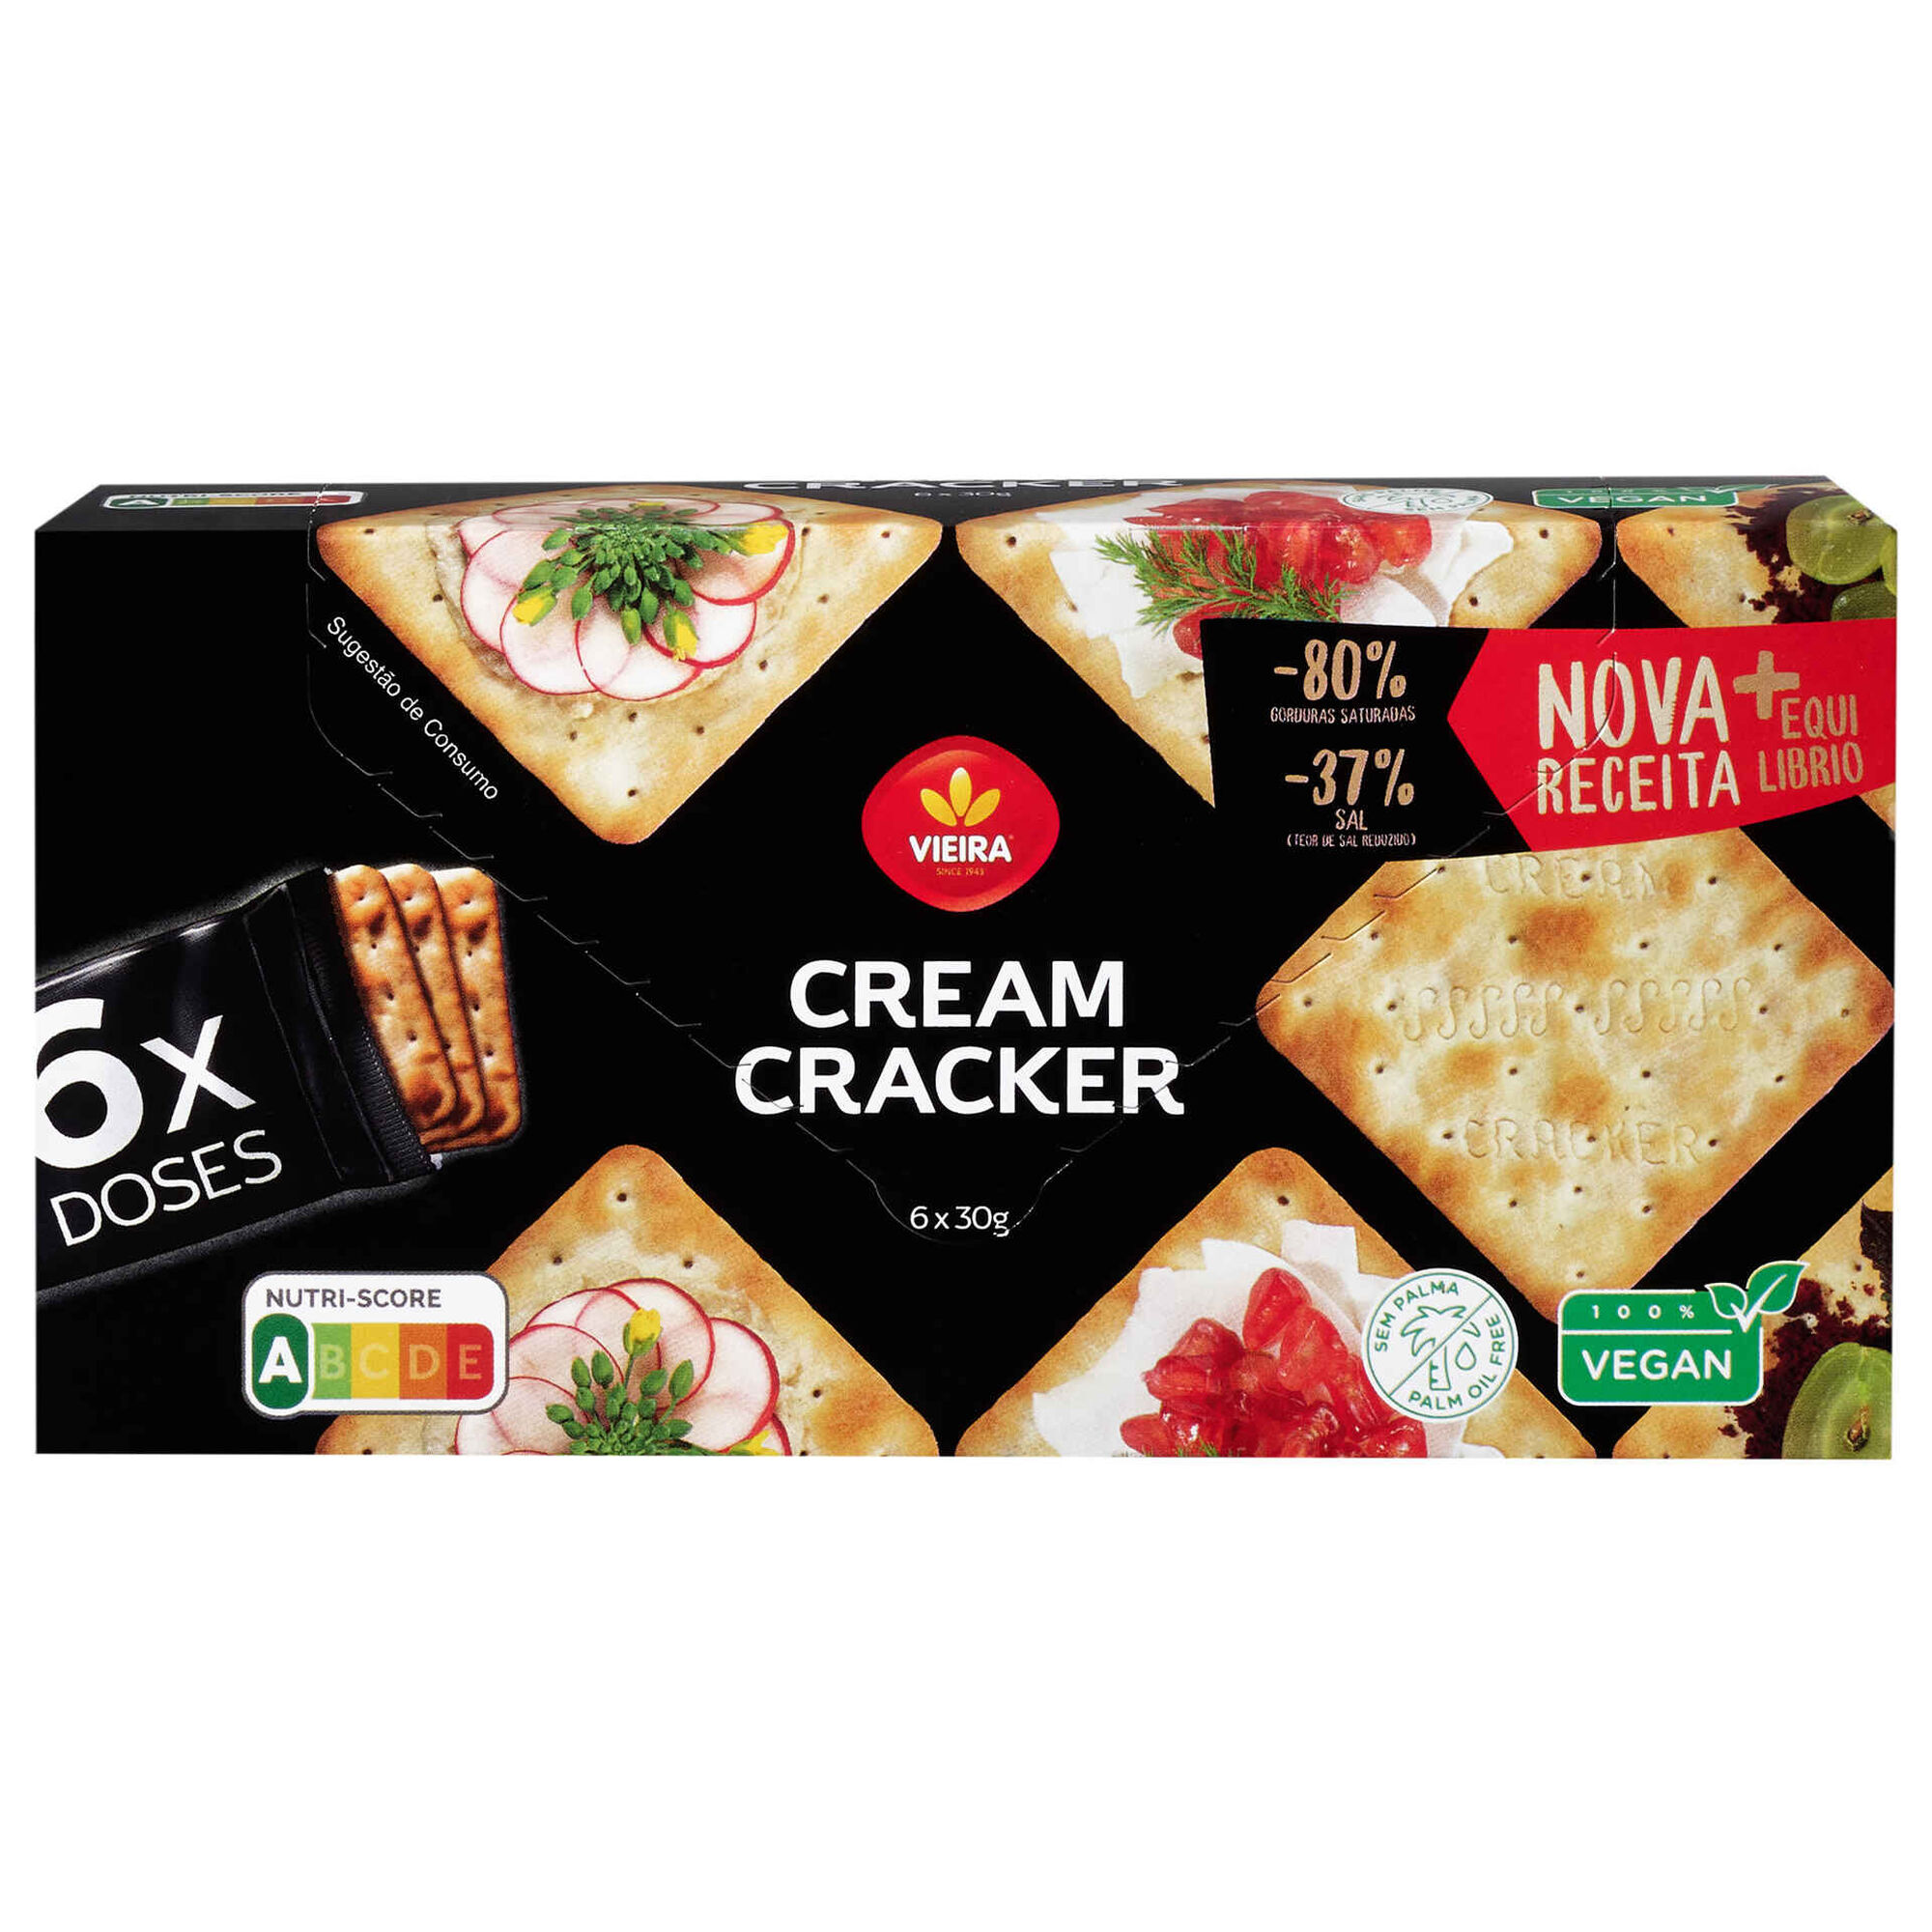 Bolachas Cream Cracker